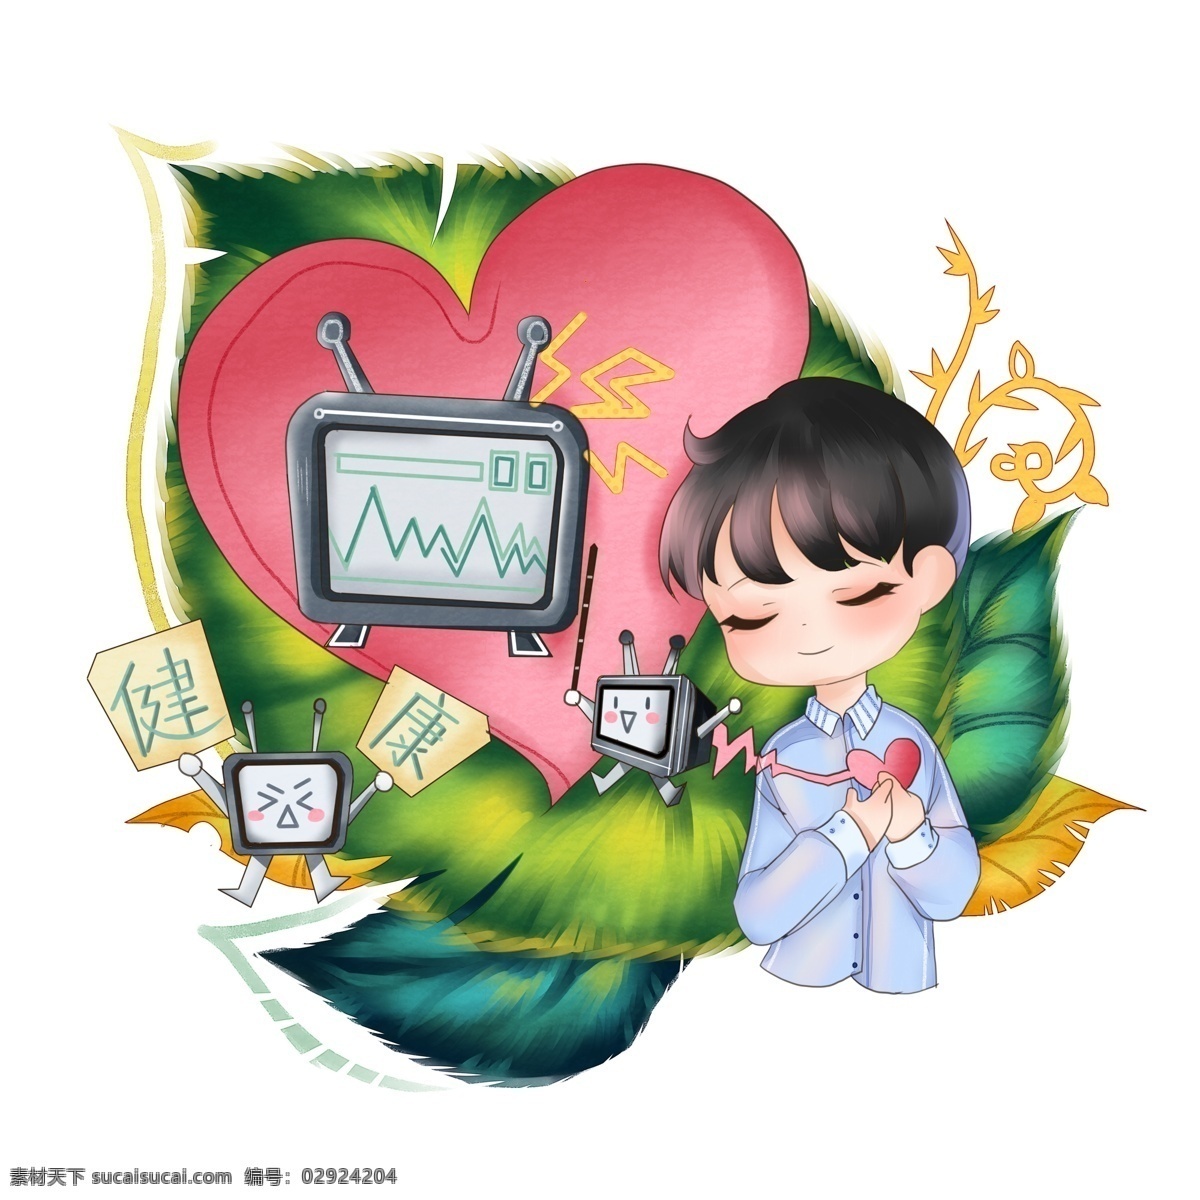 商用 世界 保健 日 保护 心脏 健康 元素 世界保健日 可商用 保护心脏健康 卡通 手绘 装饰图案